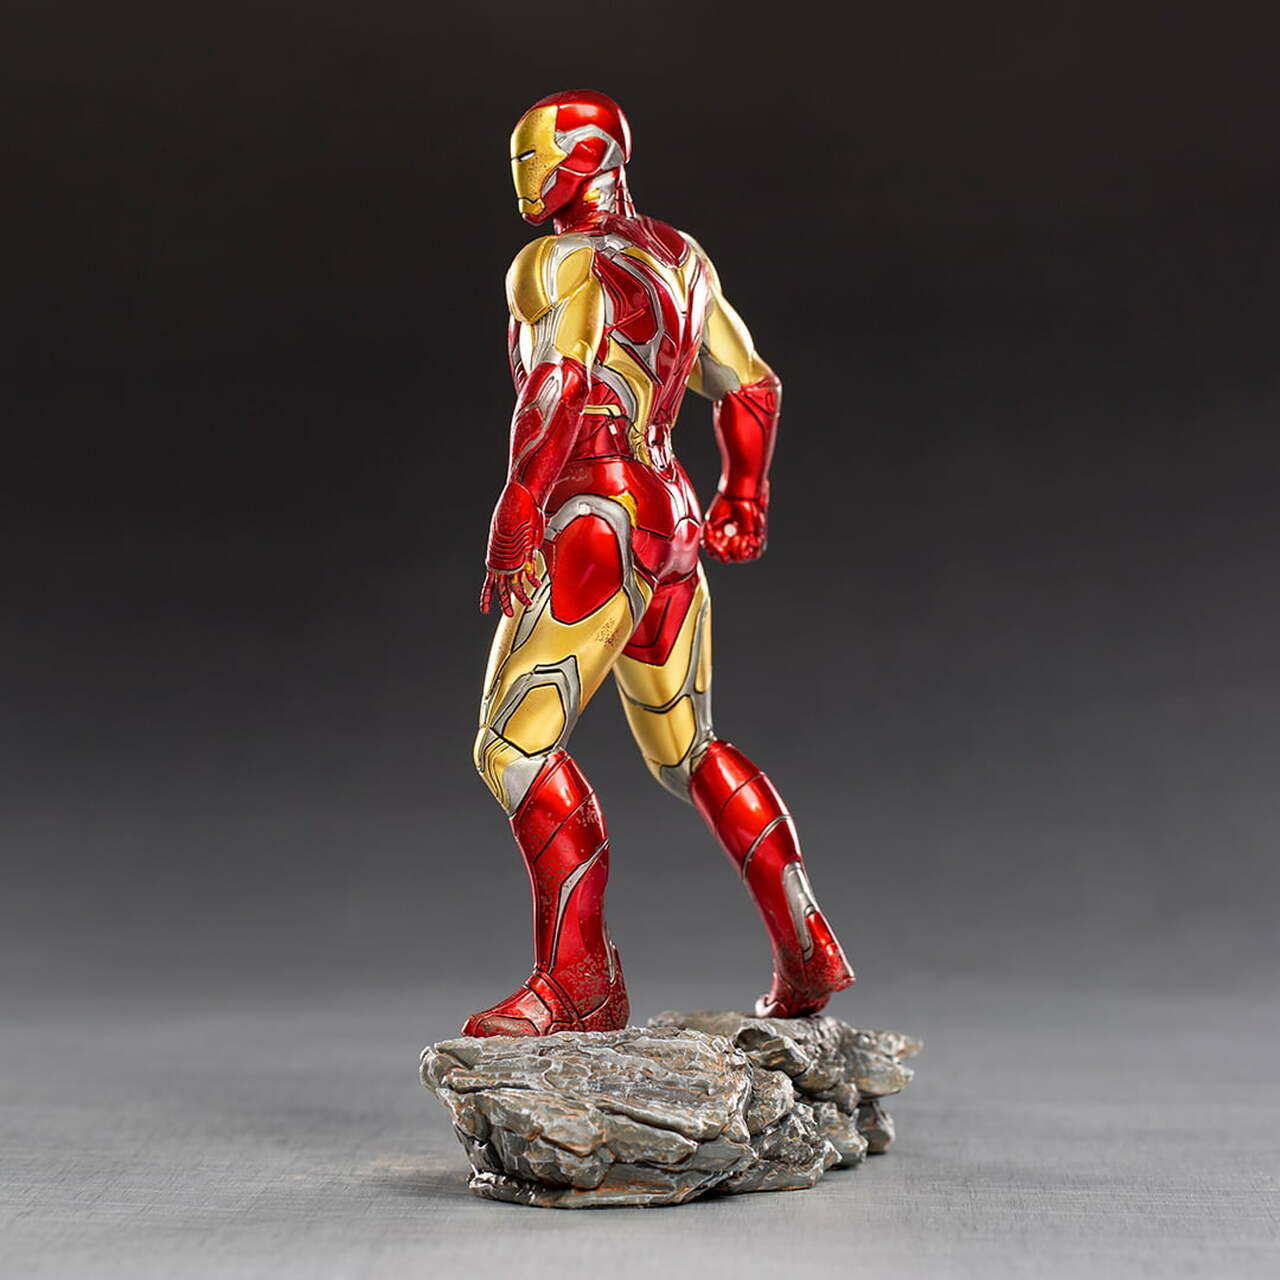 [PEDIDO] Estatua Iron Man Ultimate - The Infinity Saga marca Iron Studios BDS escala de arte 1/10